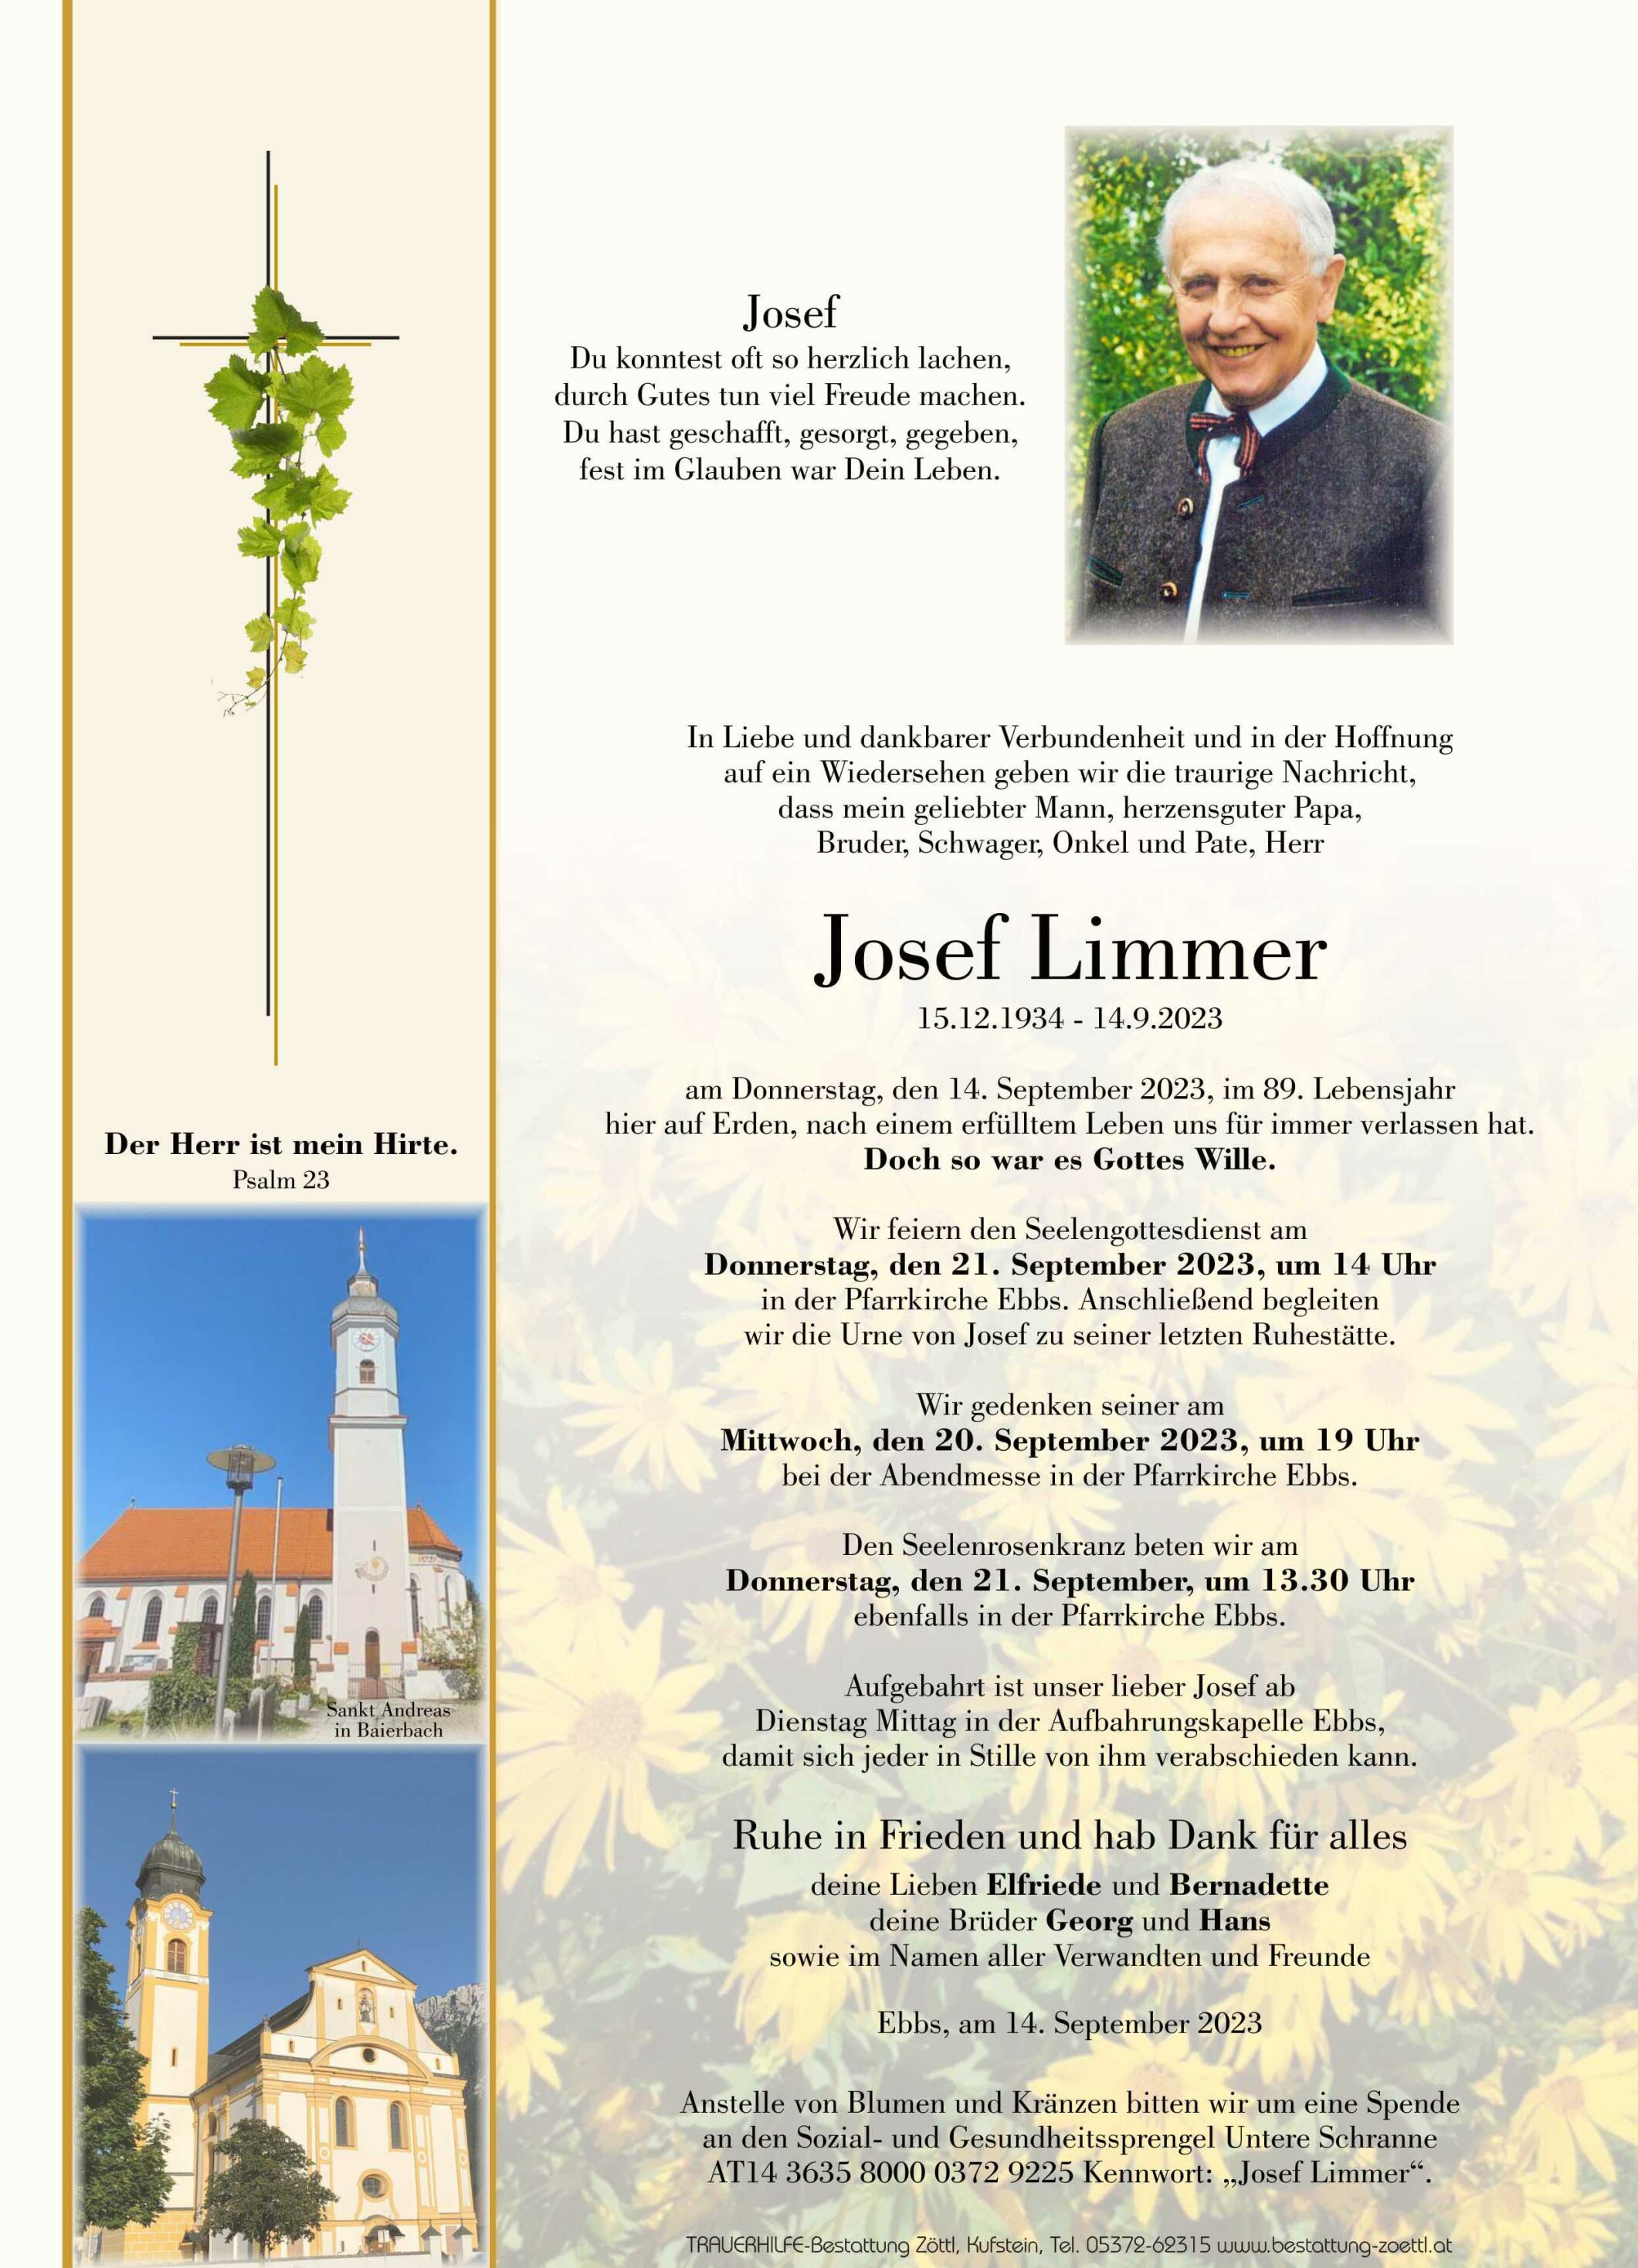 Josef Limmer